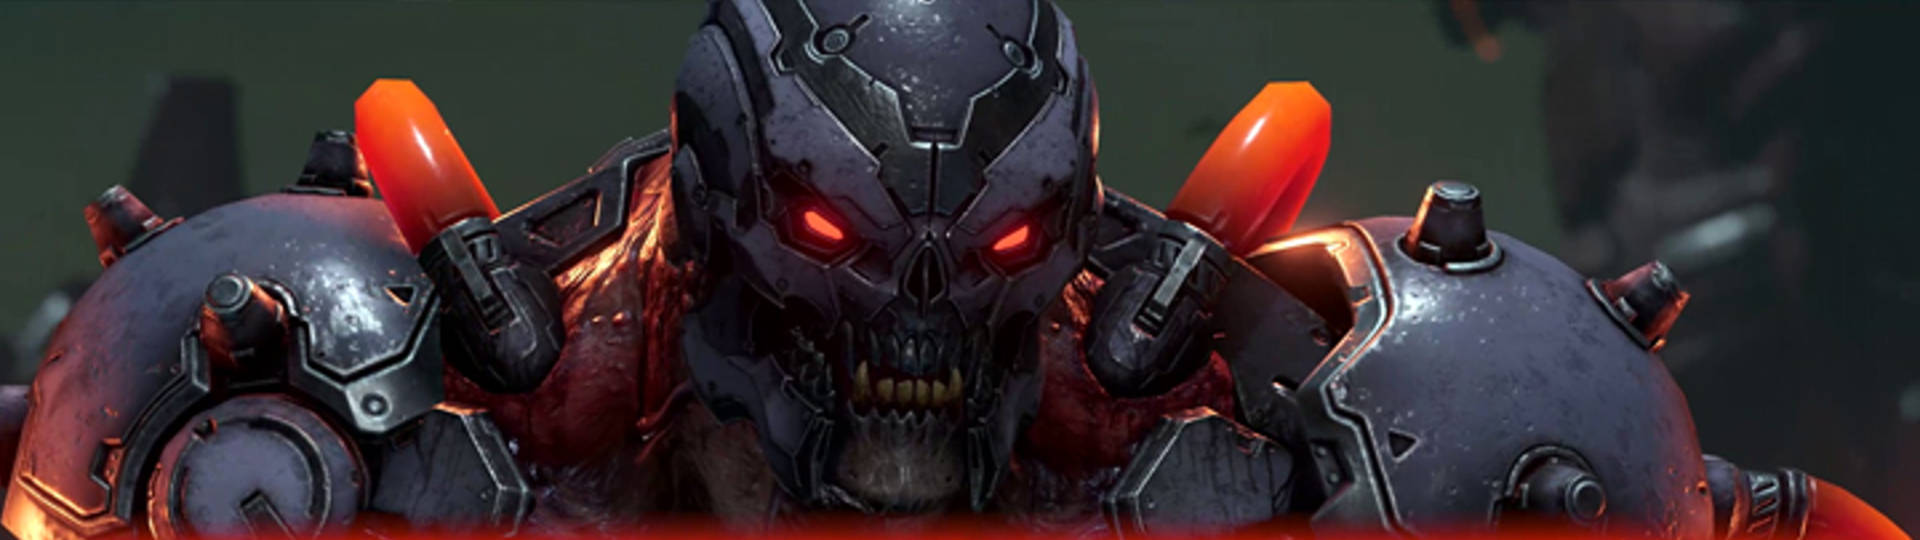 Doom Eternal Horde Mode Update 6.66 slice 2